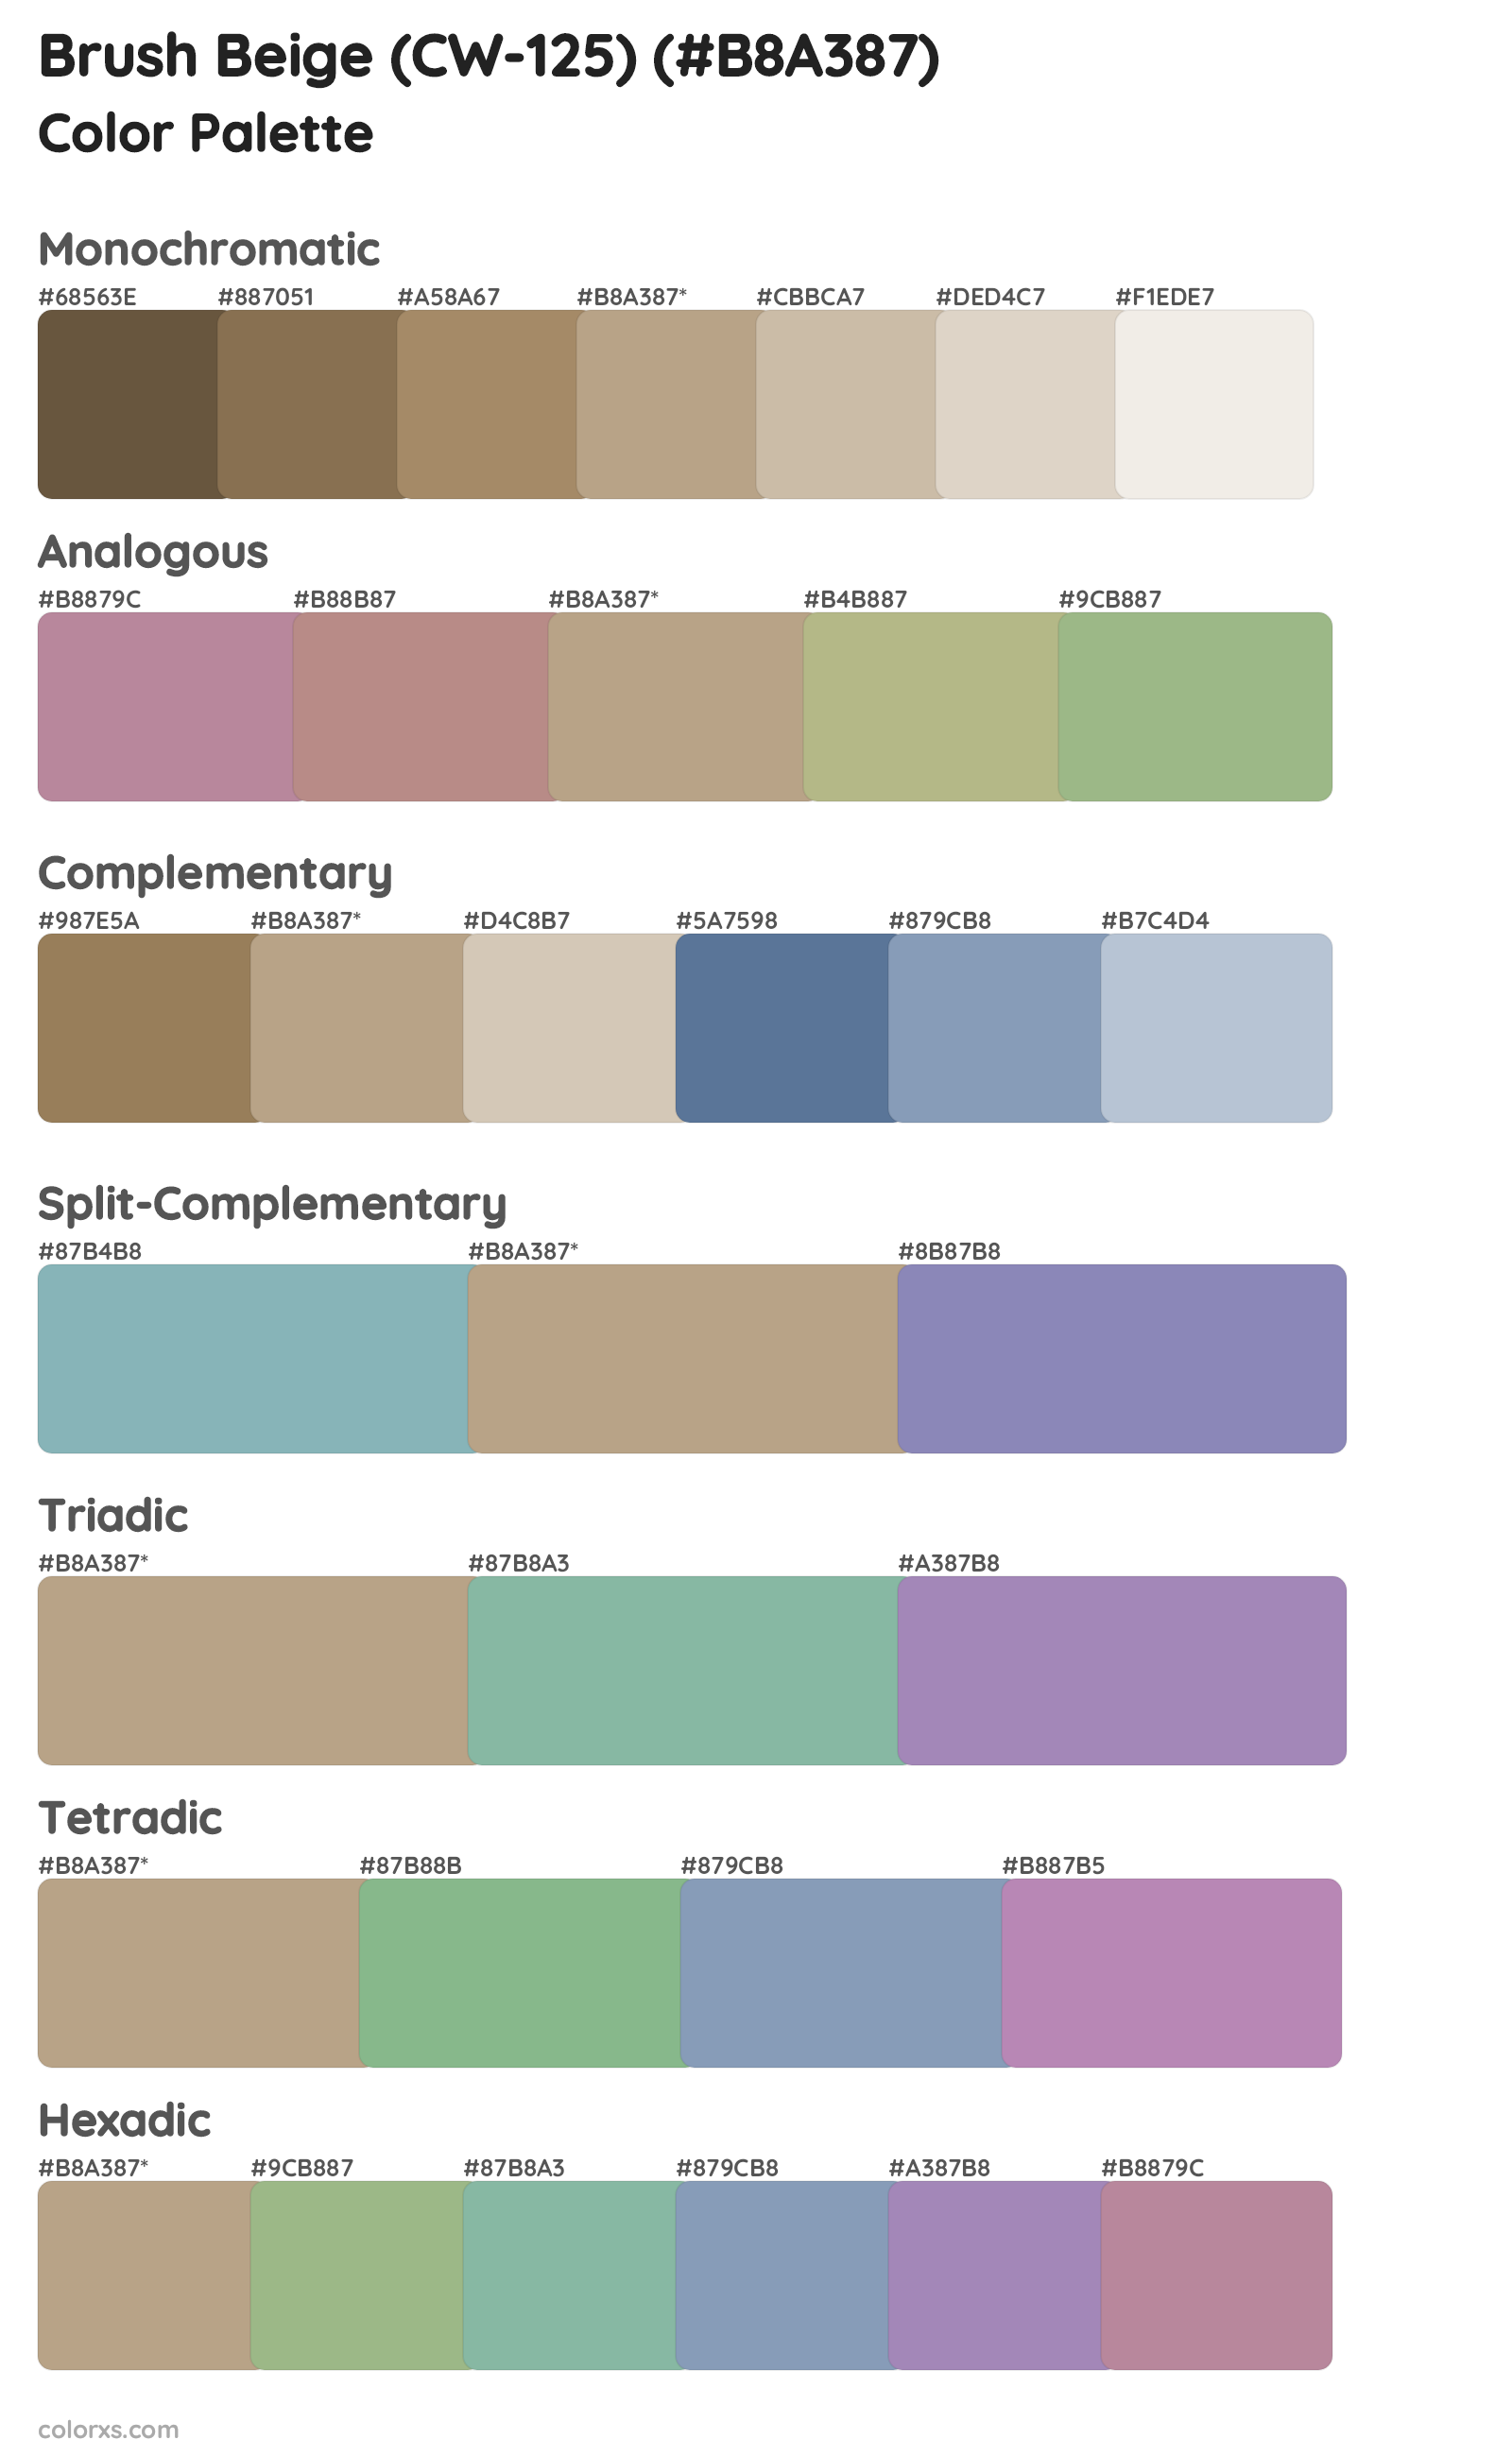 Brush Beige (CW-125) Color Scheme Palettes